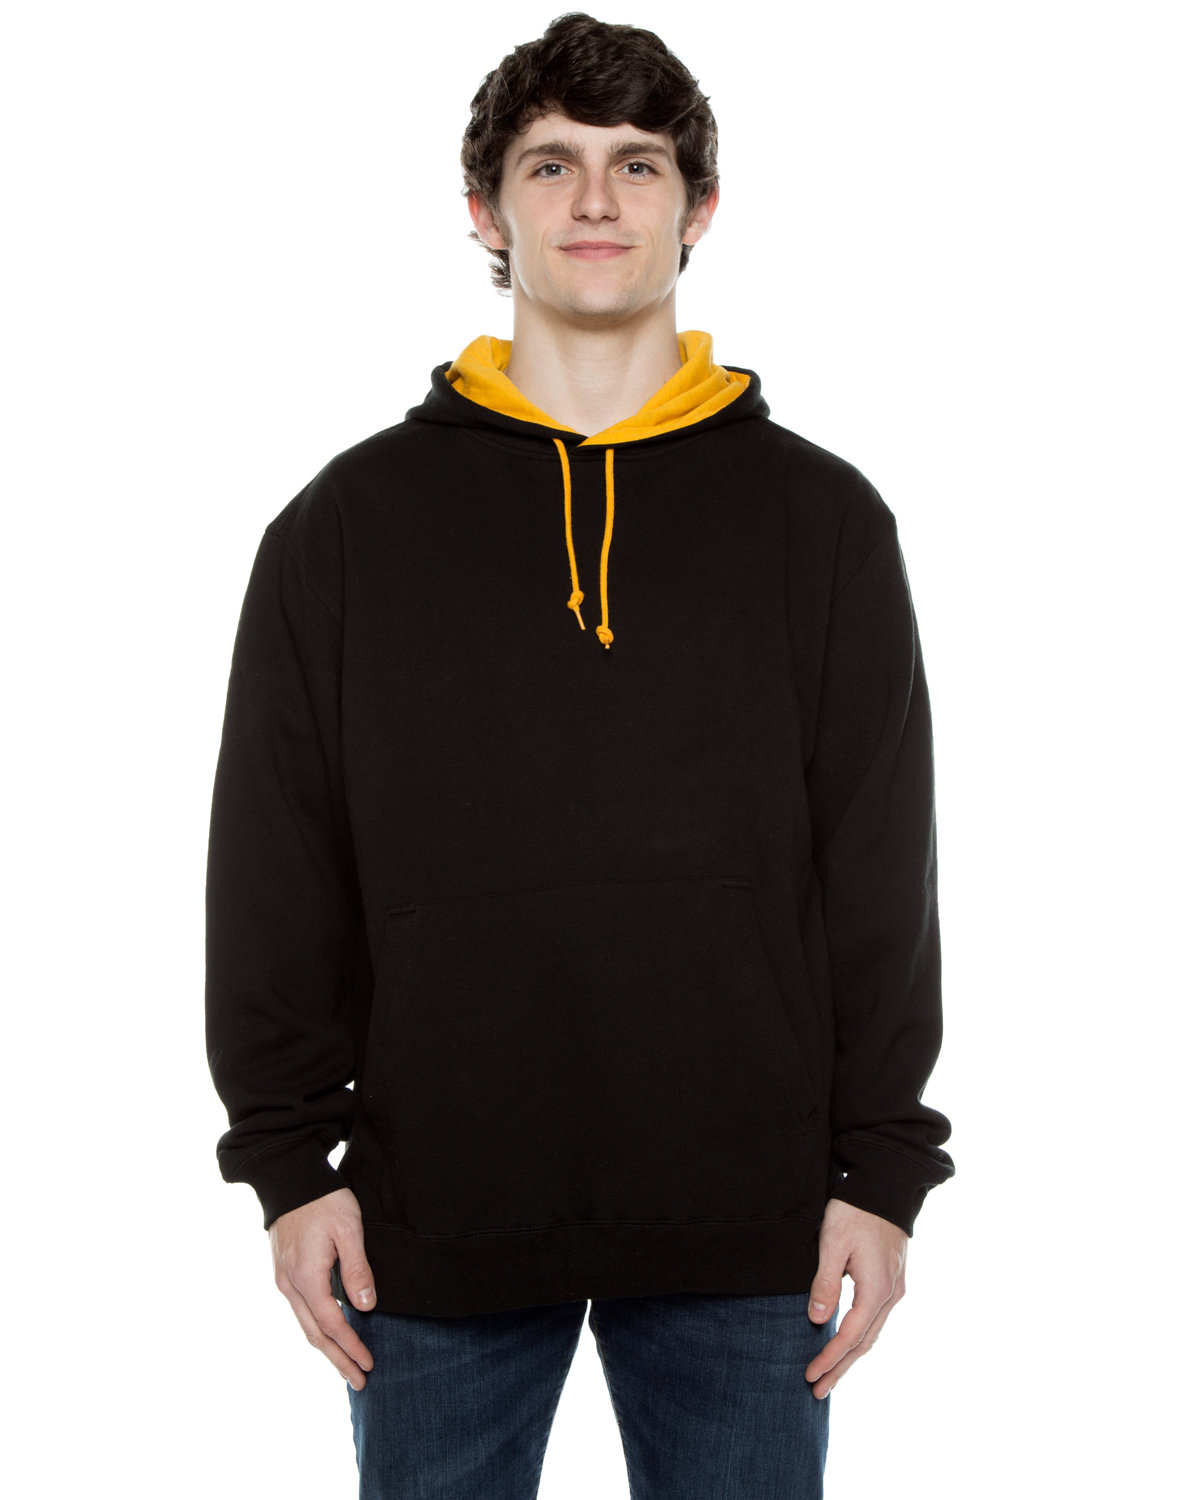 Unisex Contrast Hooded Sweatshirt-Beimar